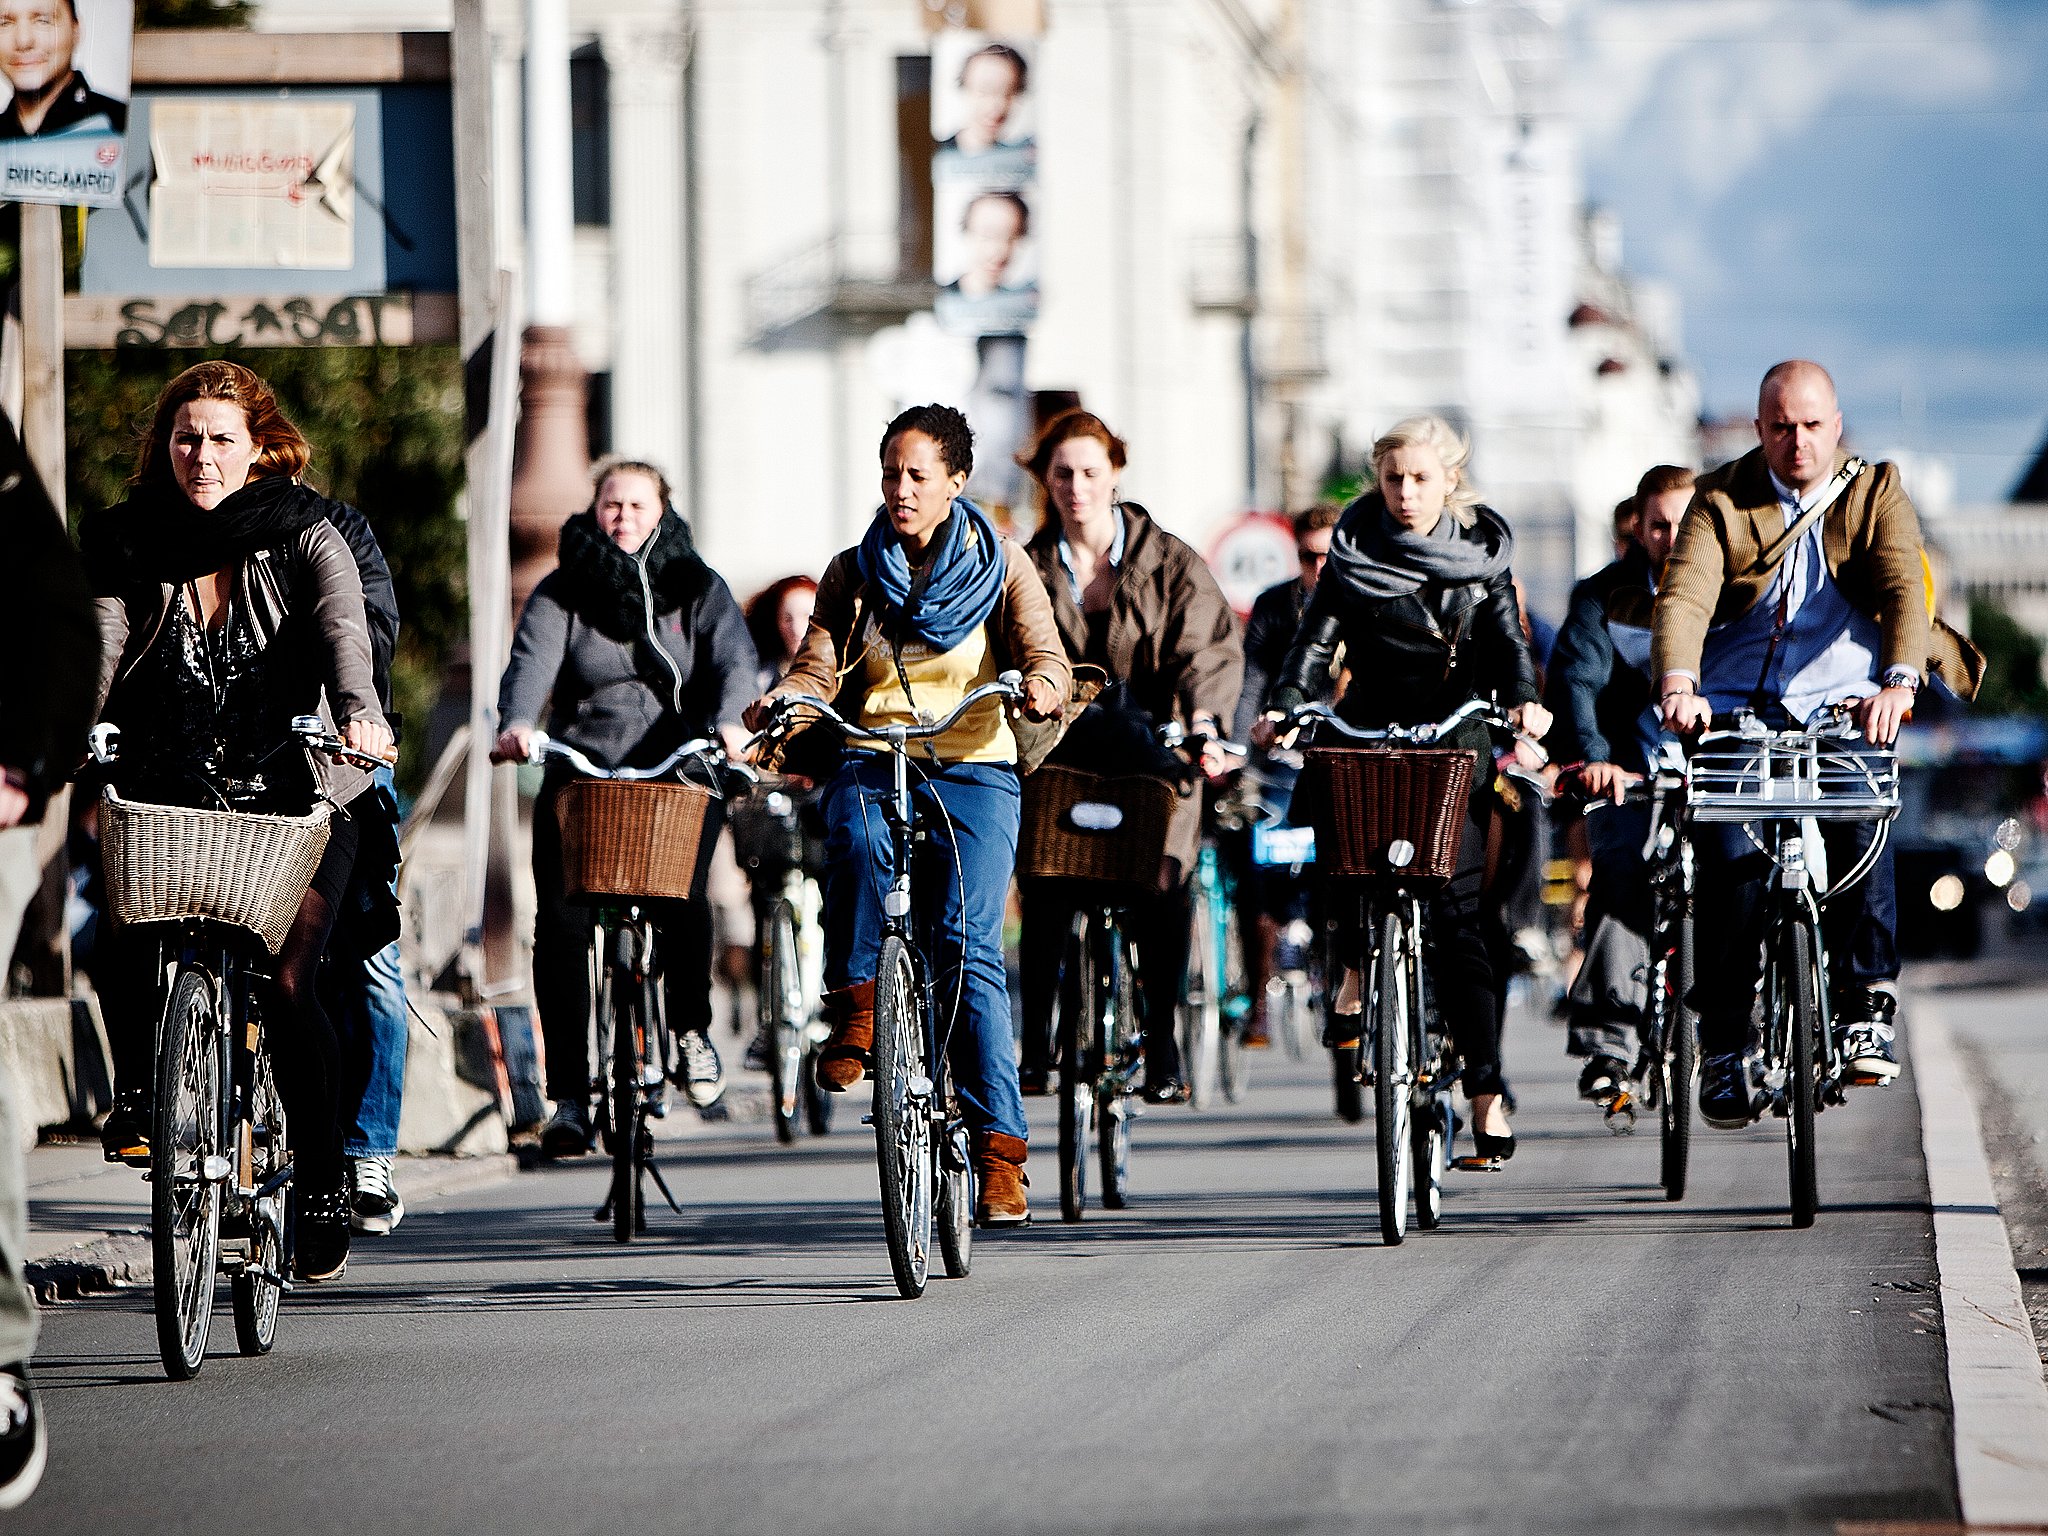 Ved daggry ustabil Fængsling København kåres igen i år til verdens bedste cykelby | TV 2 Kosmopol